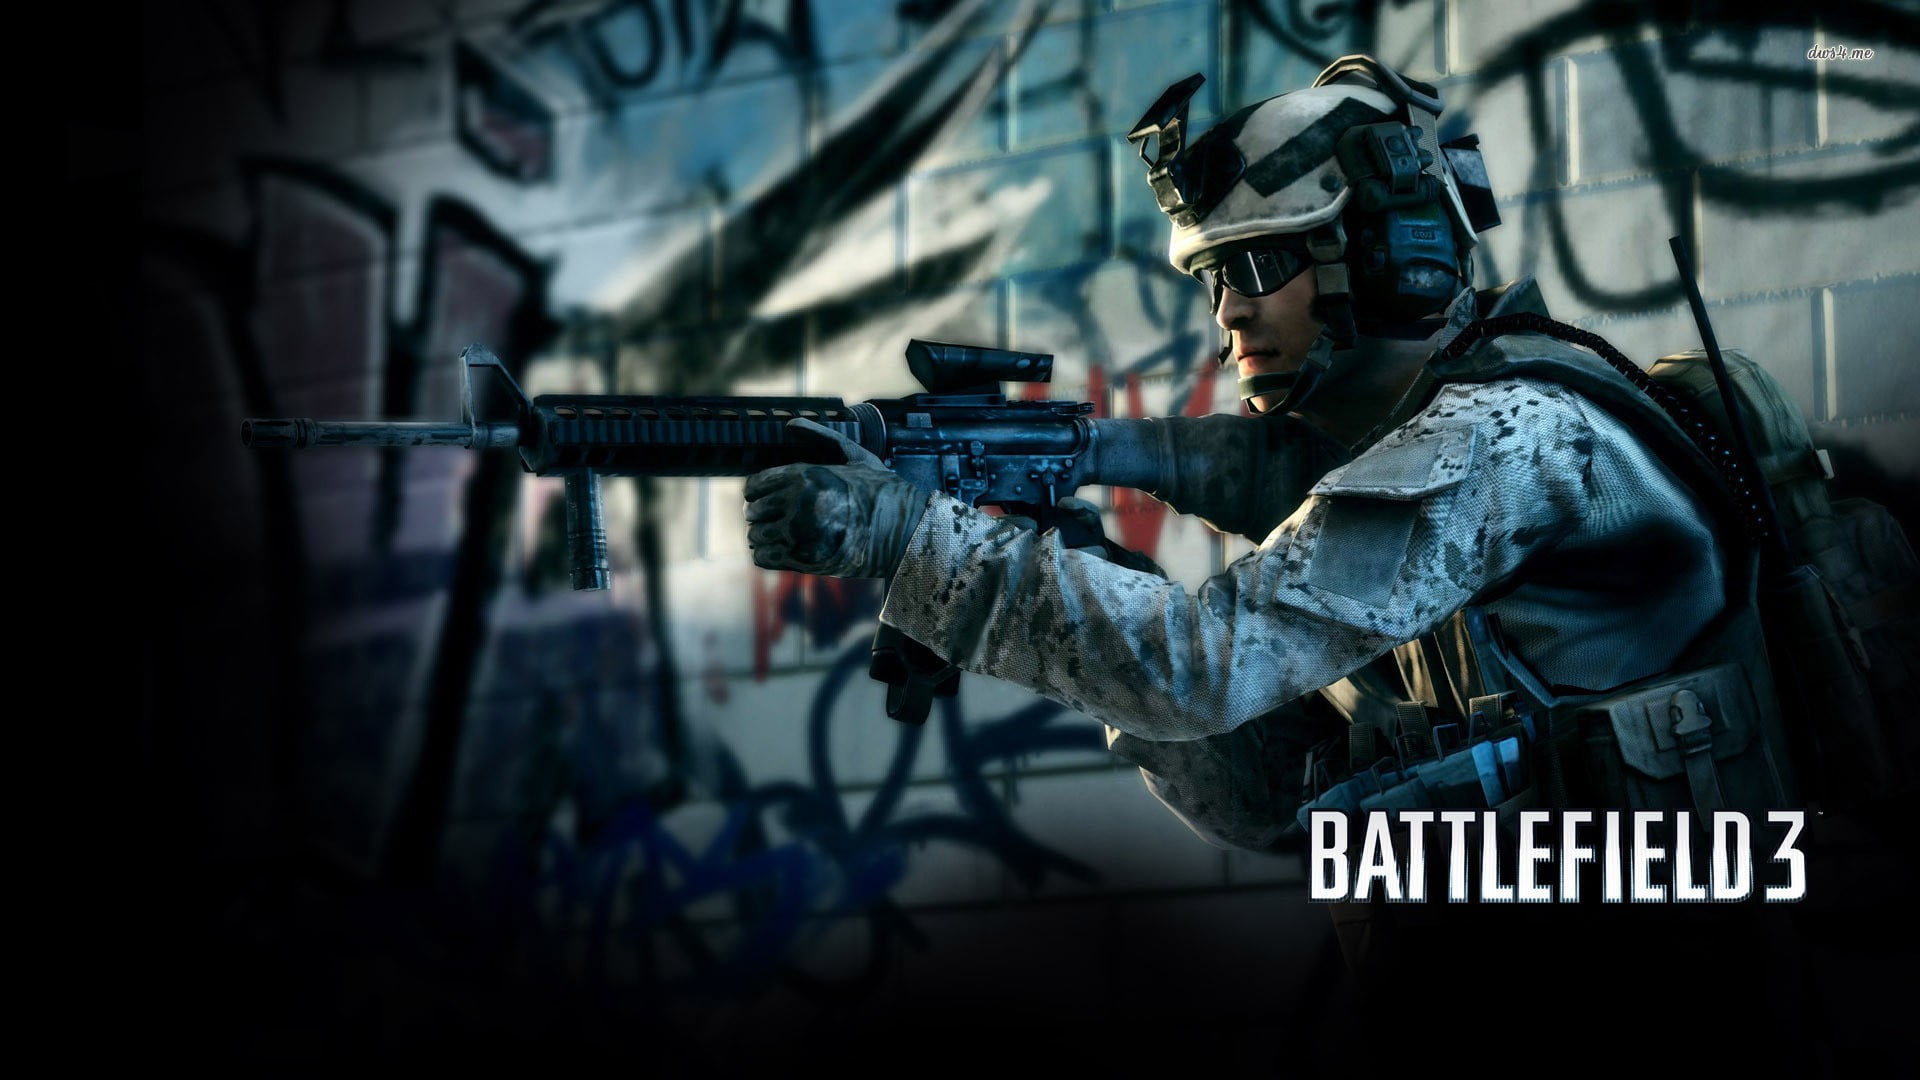 Battlefield 3 poster, video games, dice, M16, assault rifle, gun